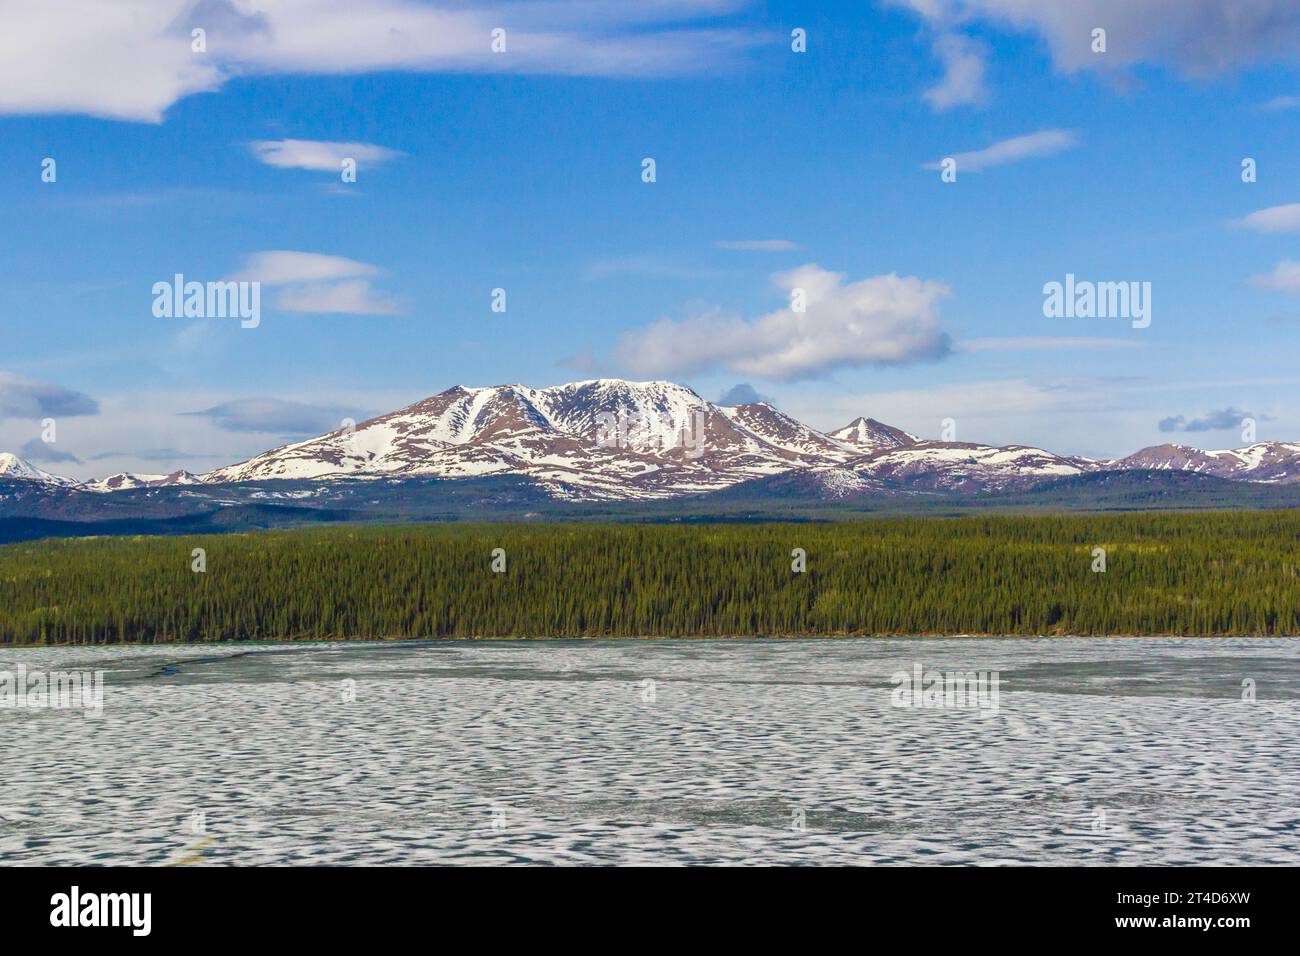 Il lago Fox sul fiume Yukon, nel territorio dello Yukon, in Canada, sta appena iniziando a sciogliersi nell'ultima settimana di maggio. È ancora per lo più congelato. Foto Stock